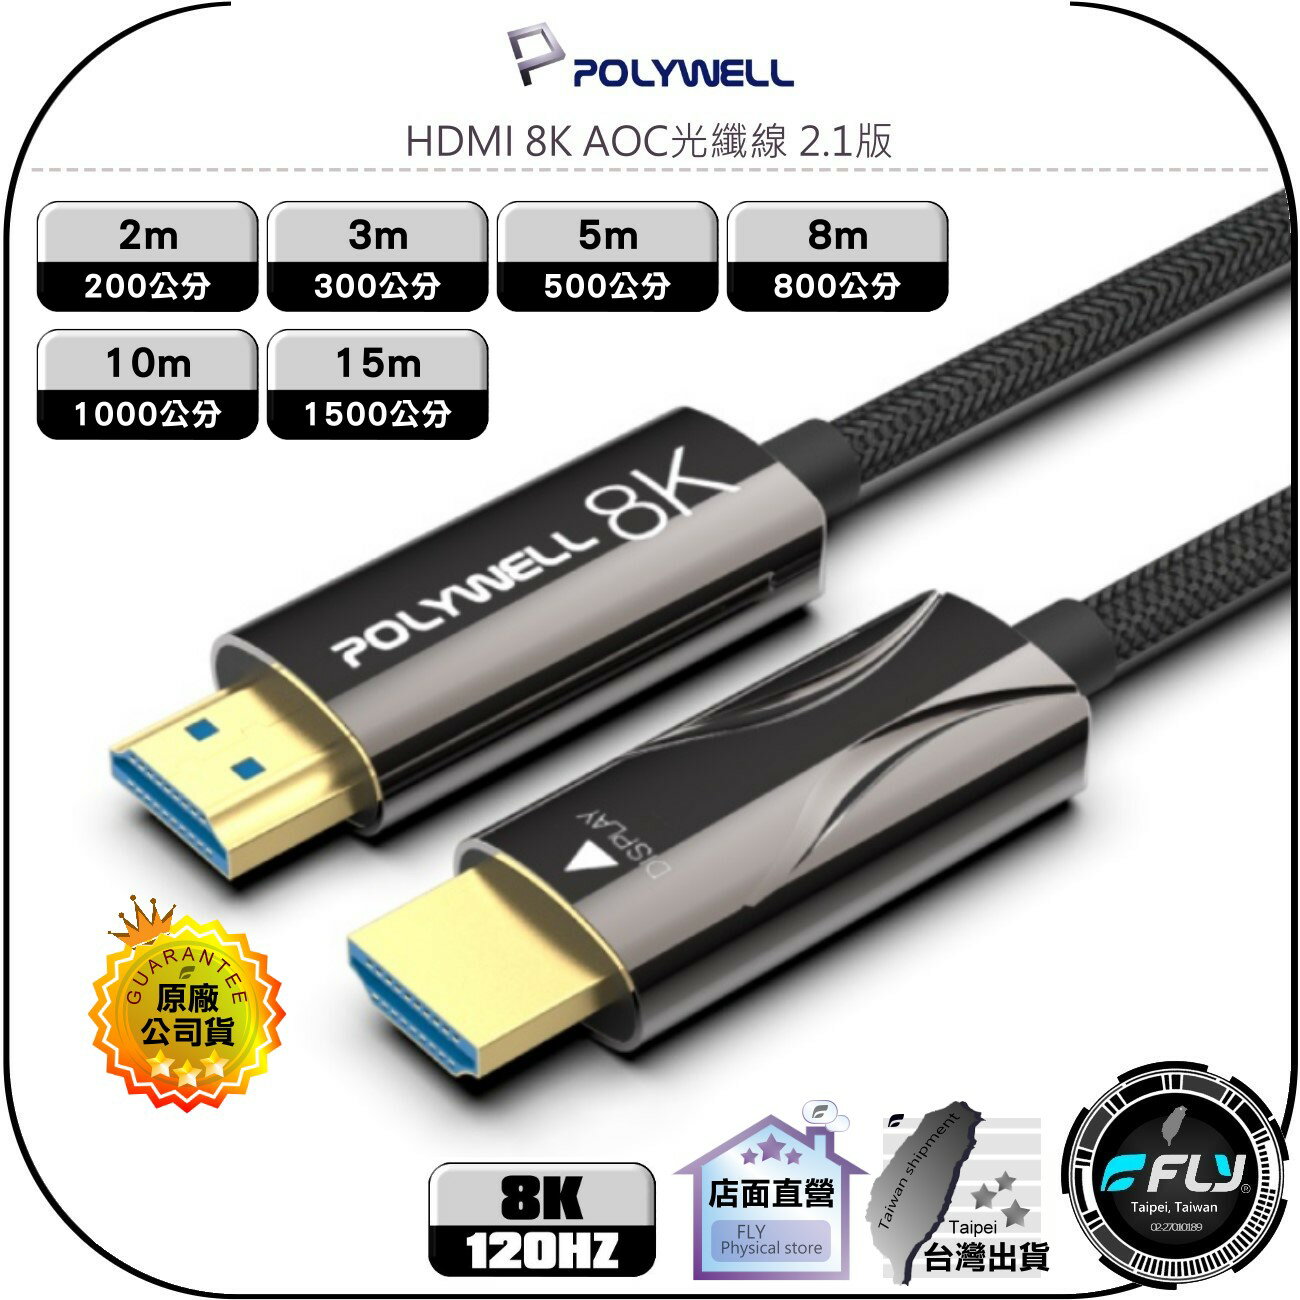 【飛翔商城】POLYWELL 寶利威爾 HDMI 8K AOC光纖線◉影音傳輸◉2m/3m/5m/8m/10m/15m